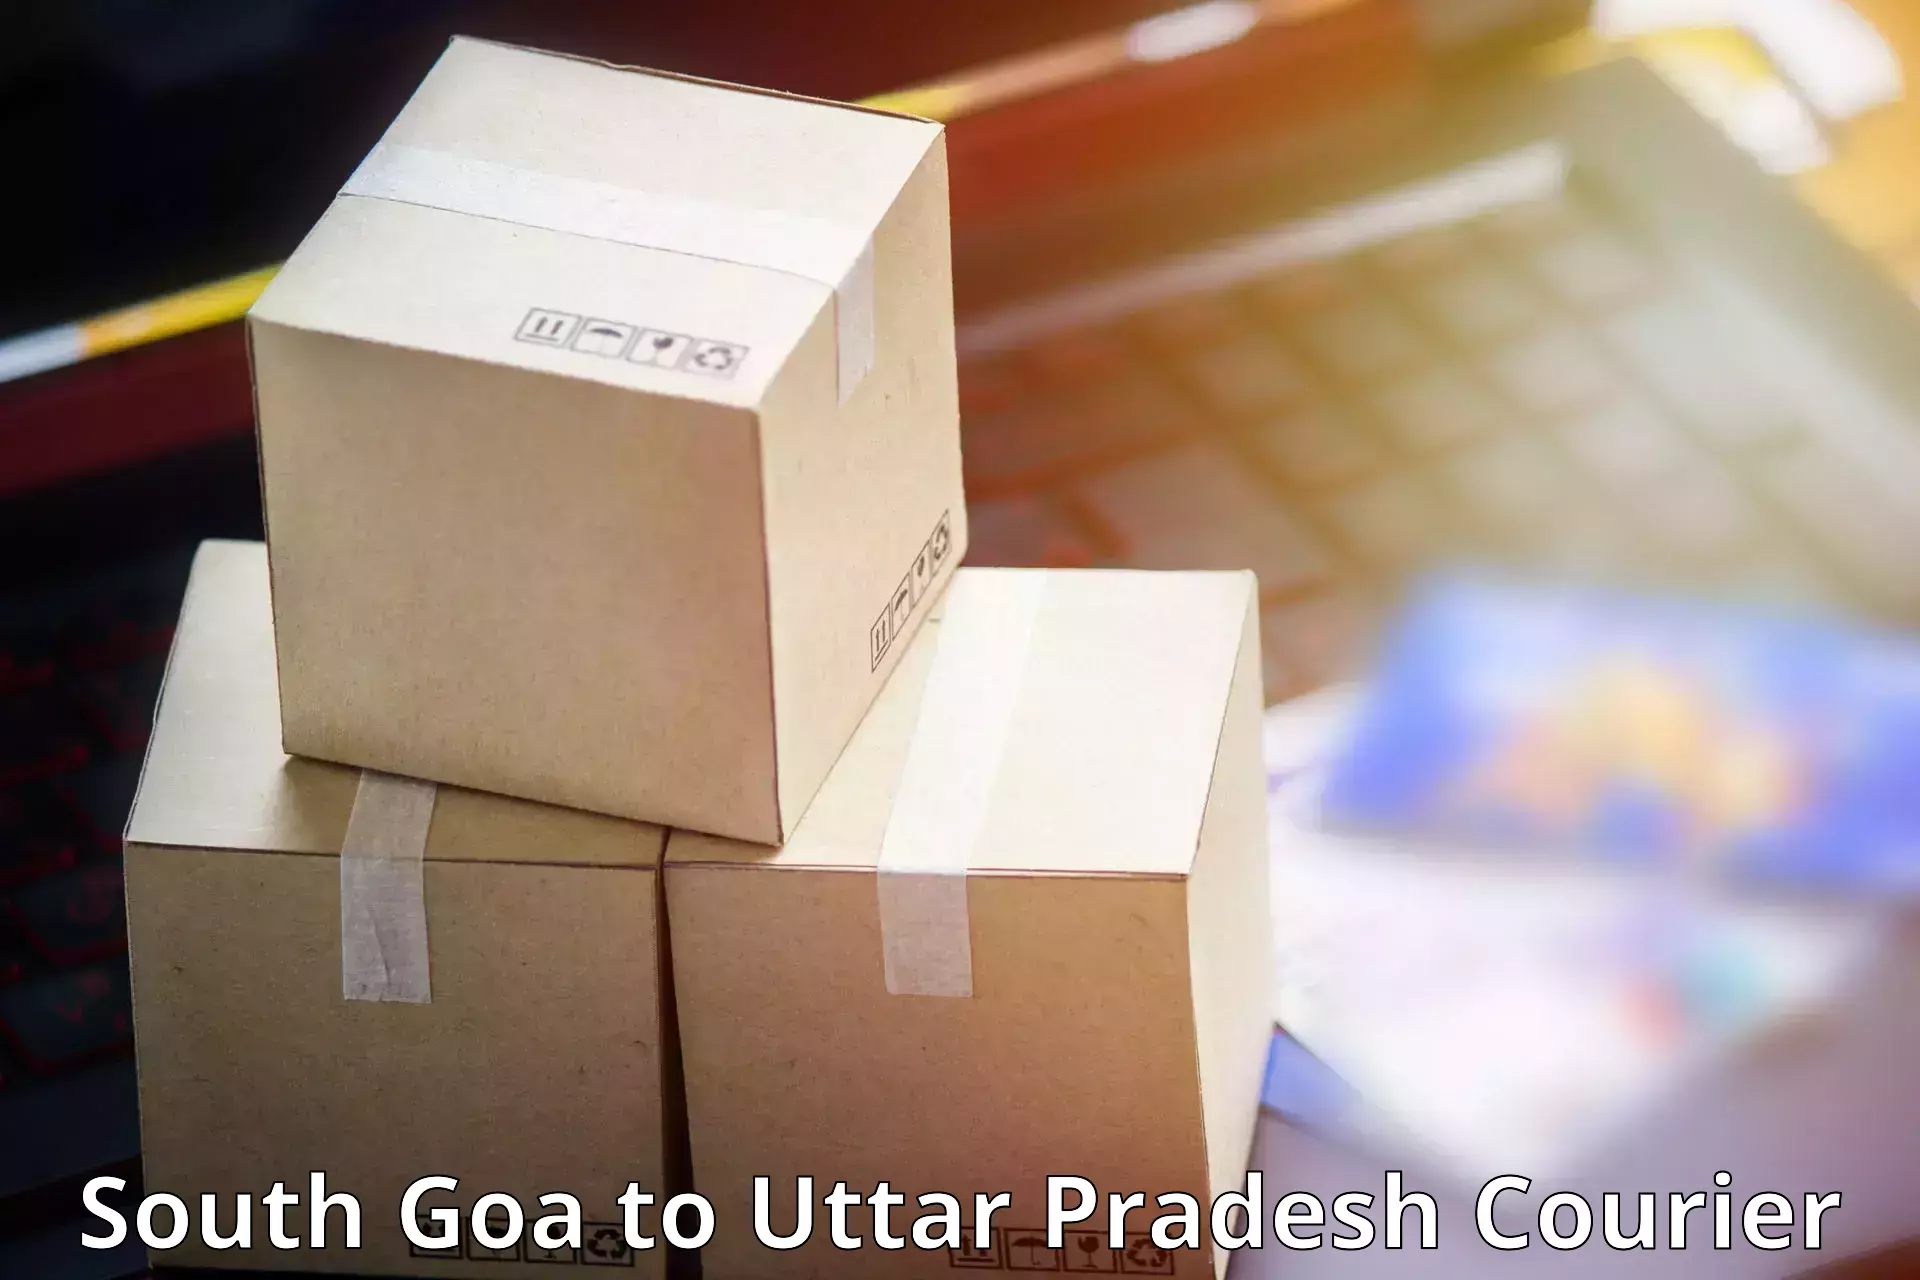 Premium courier services South Goa to Budaun